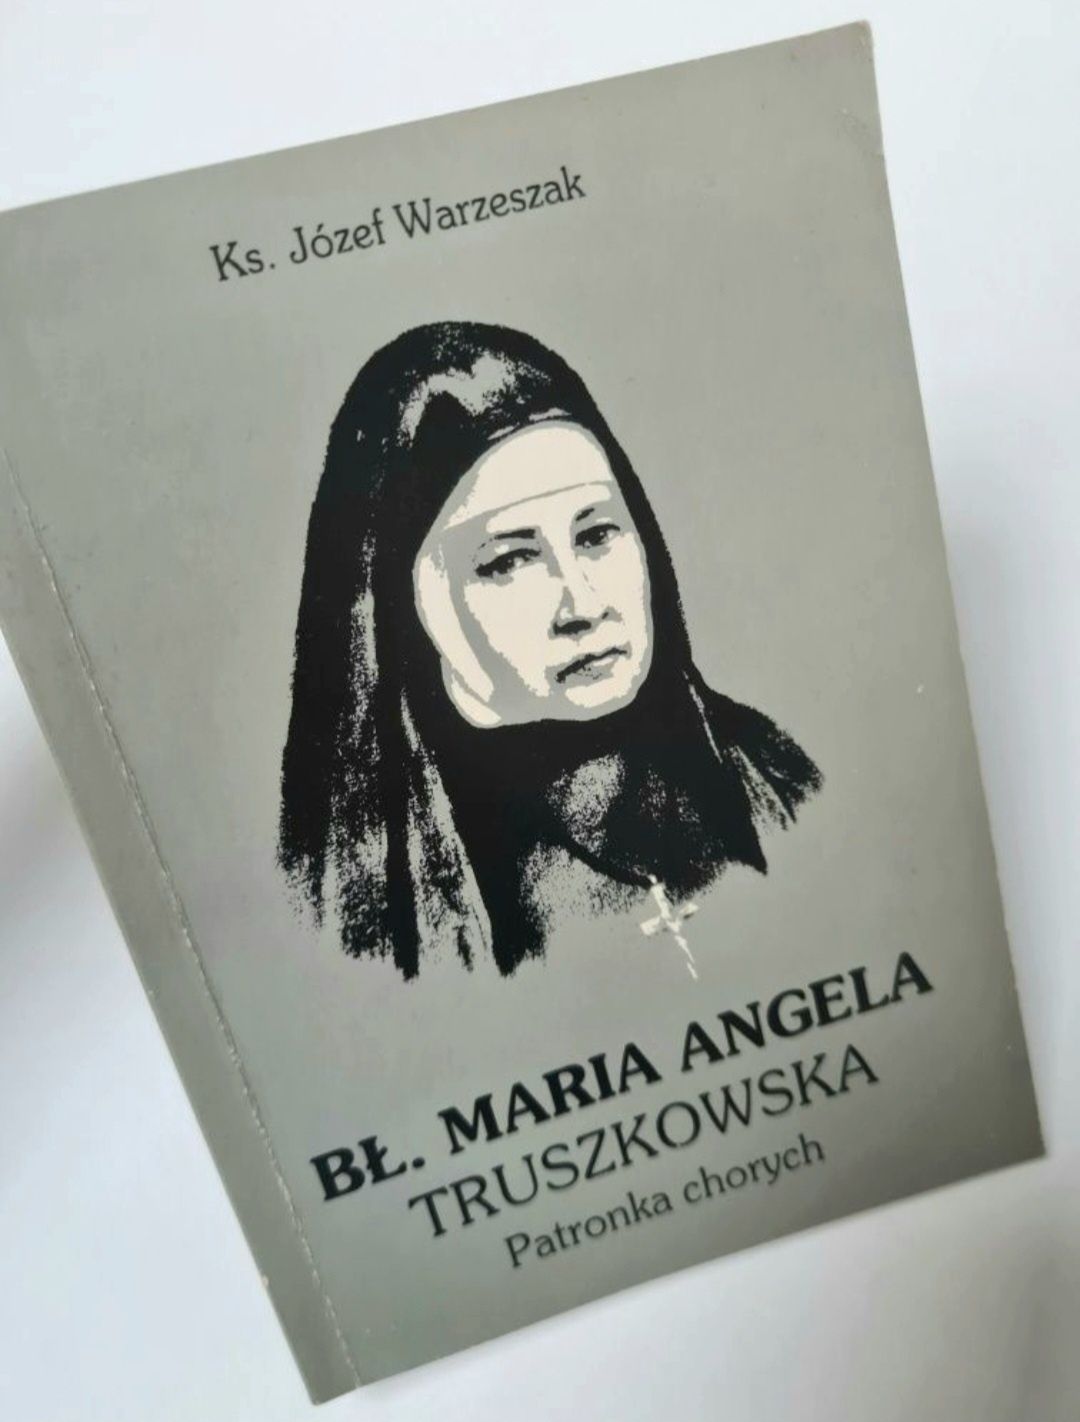 Bł. Maria Angela Truszkowska patronka chorych - Ks. Józef Warzeszak